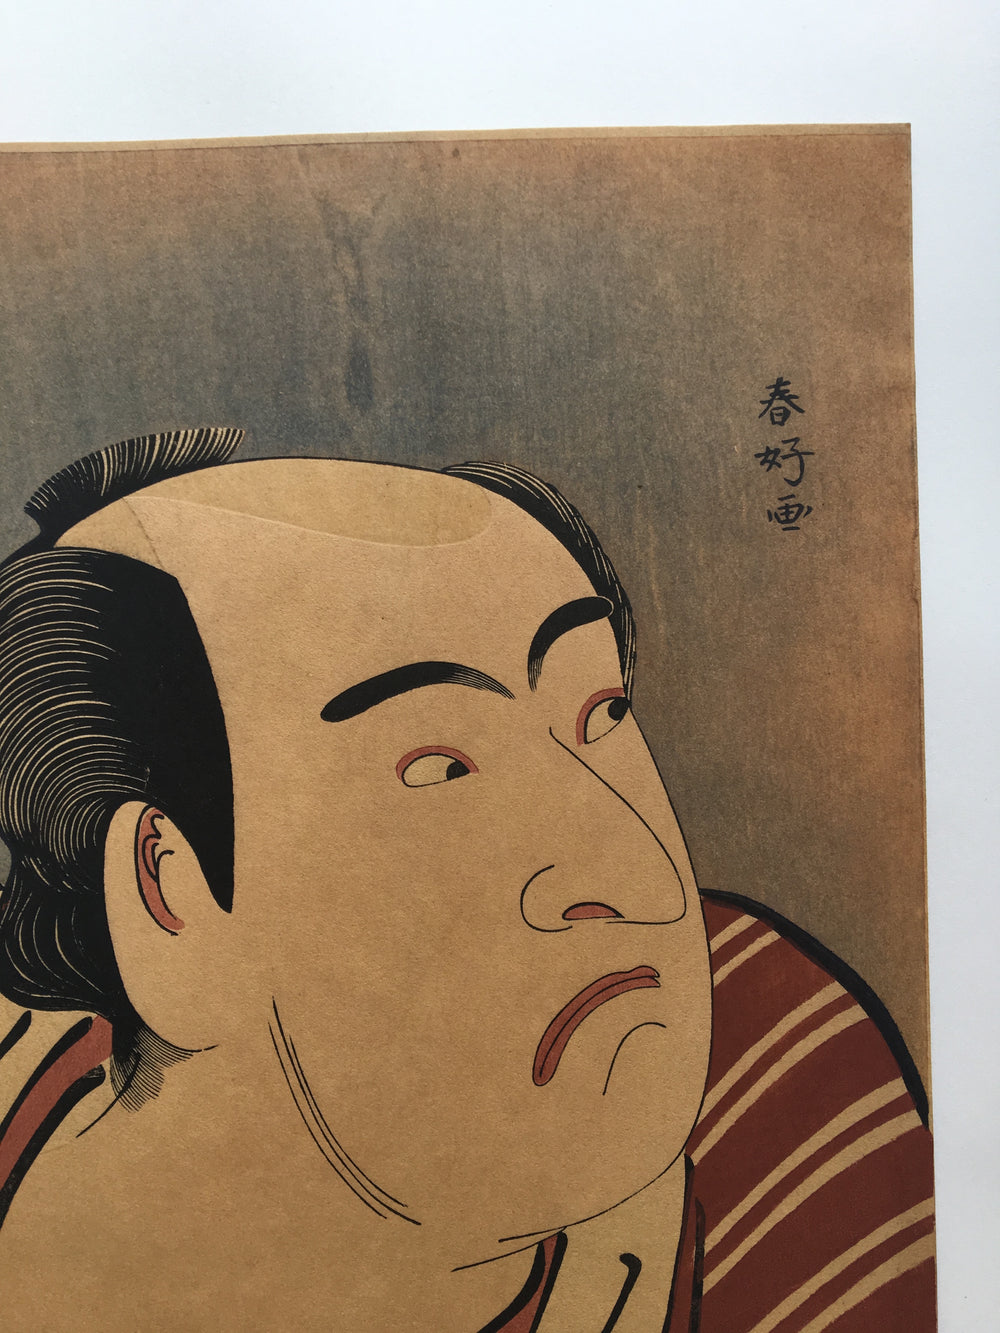 Matsumoto Kōshirō IV as Tsurunosuke by Katsukawa Shunshō (late 18th century)